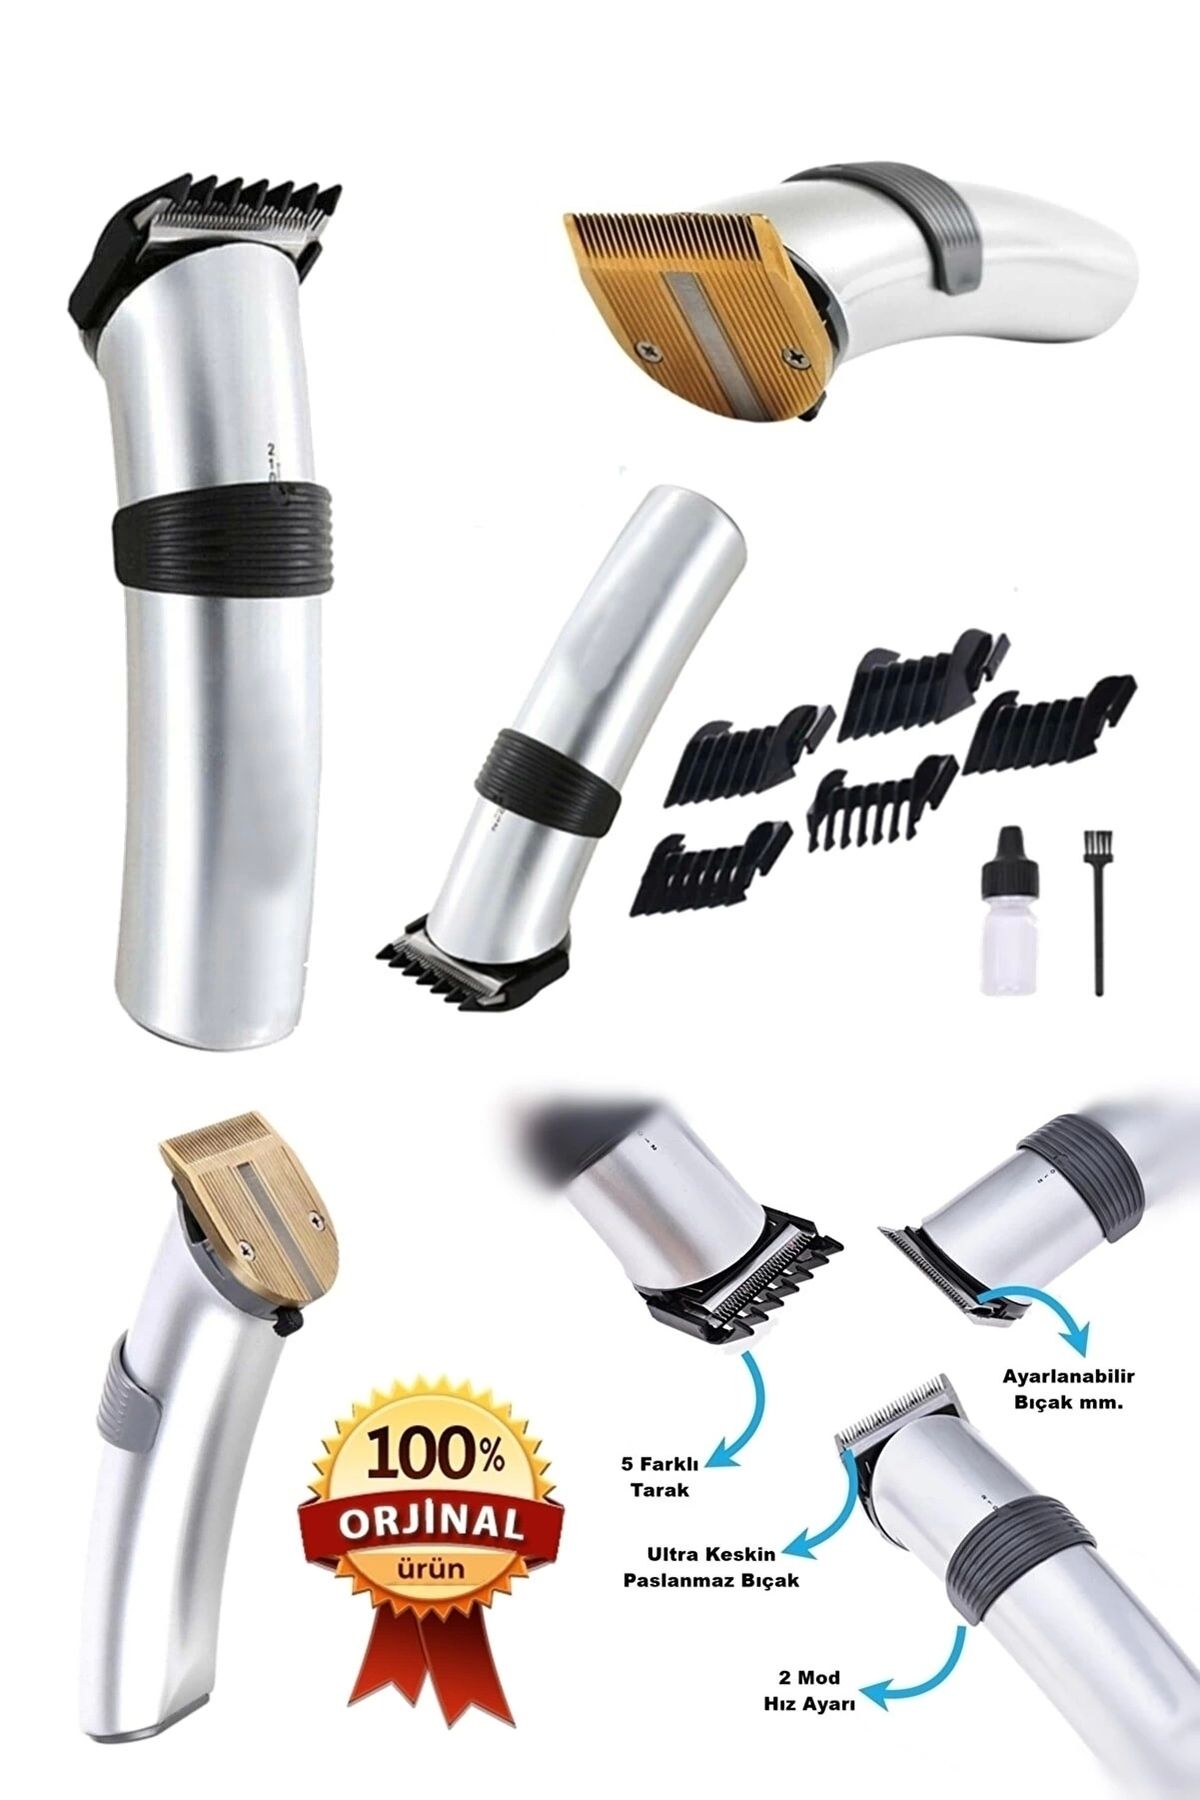 teknotrust Kuru 609 Profesyonel Şarjlı Saç Sakal Kesme Tıraş Makinesi Erkek Tıraş Makine Seti Kablolu İthalatç